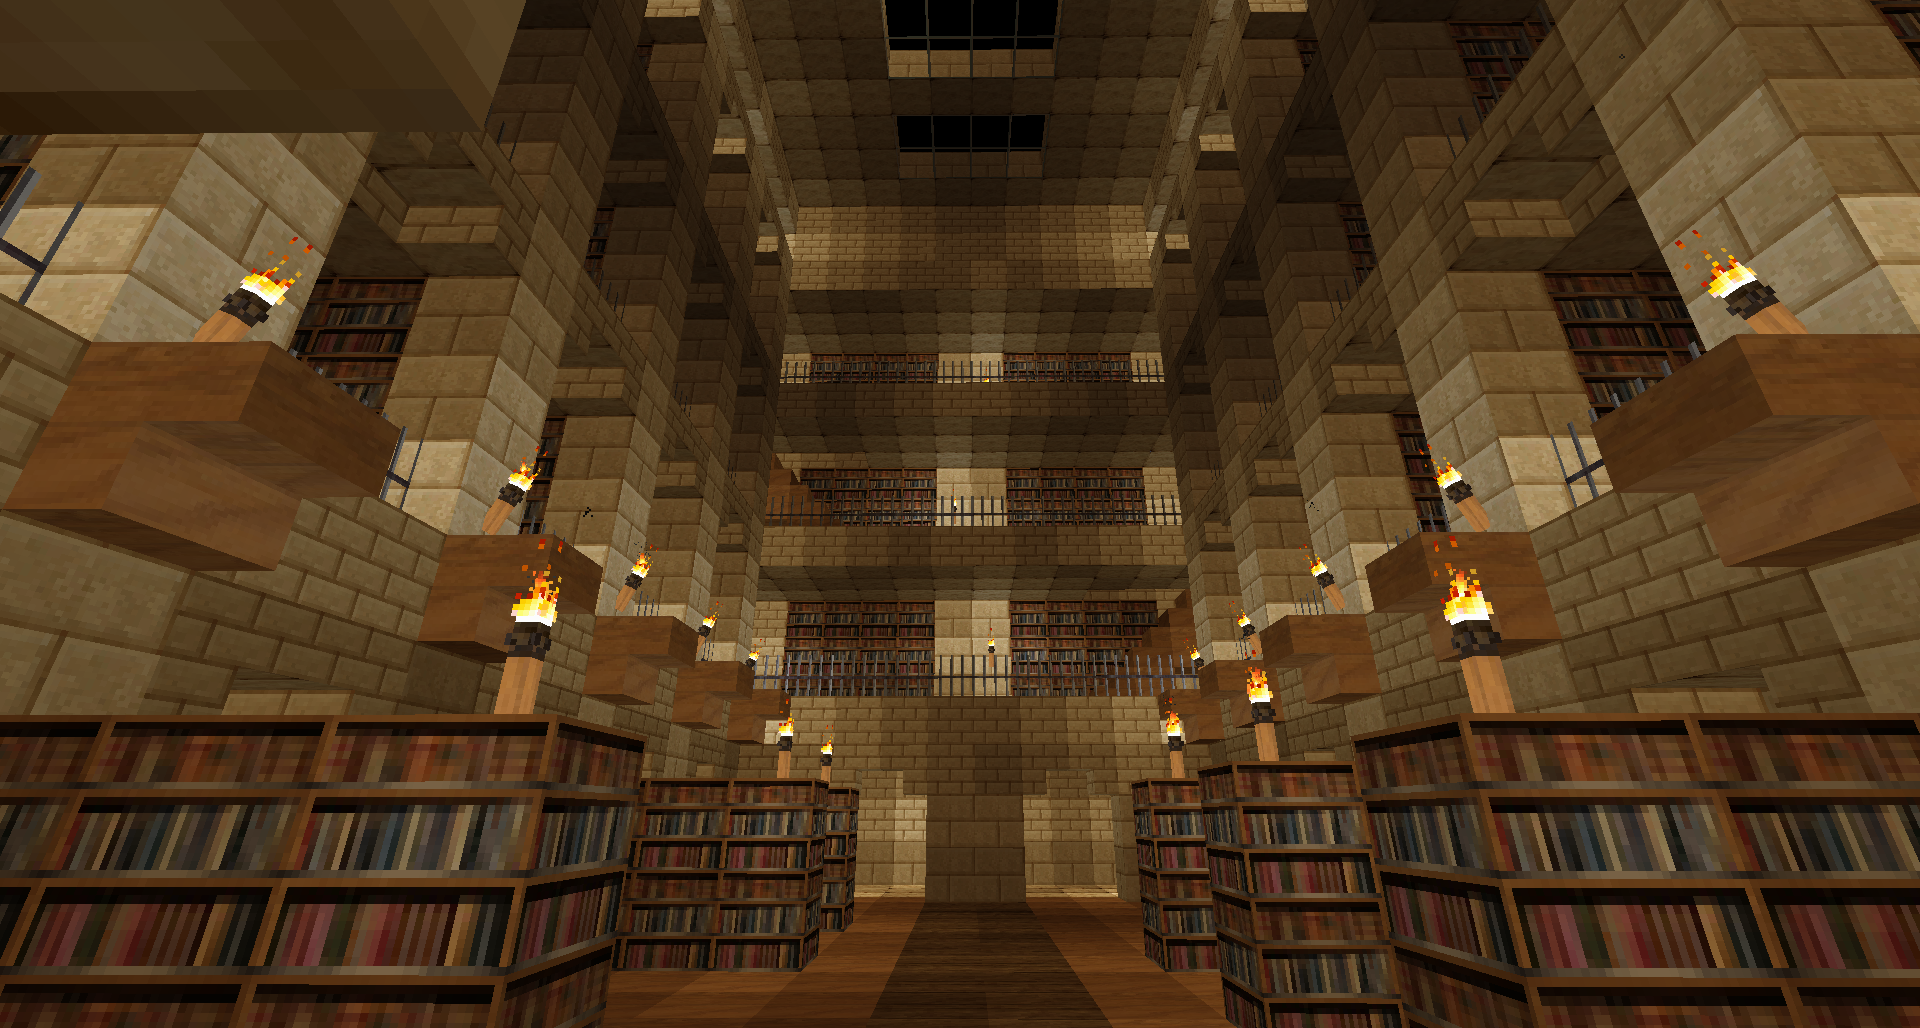 Майнкрафт libraries. Красивые библиотеки в МАЙНКРАФТЕ. Библиотека в МАЙНКРАФТЕ маленькая. Библиотека в МАЙНКРАФТЕ здание. Большая библиотека в МАЙНКРАФТЕ.